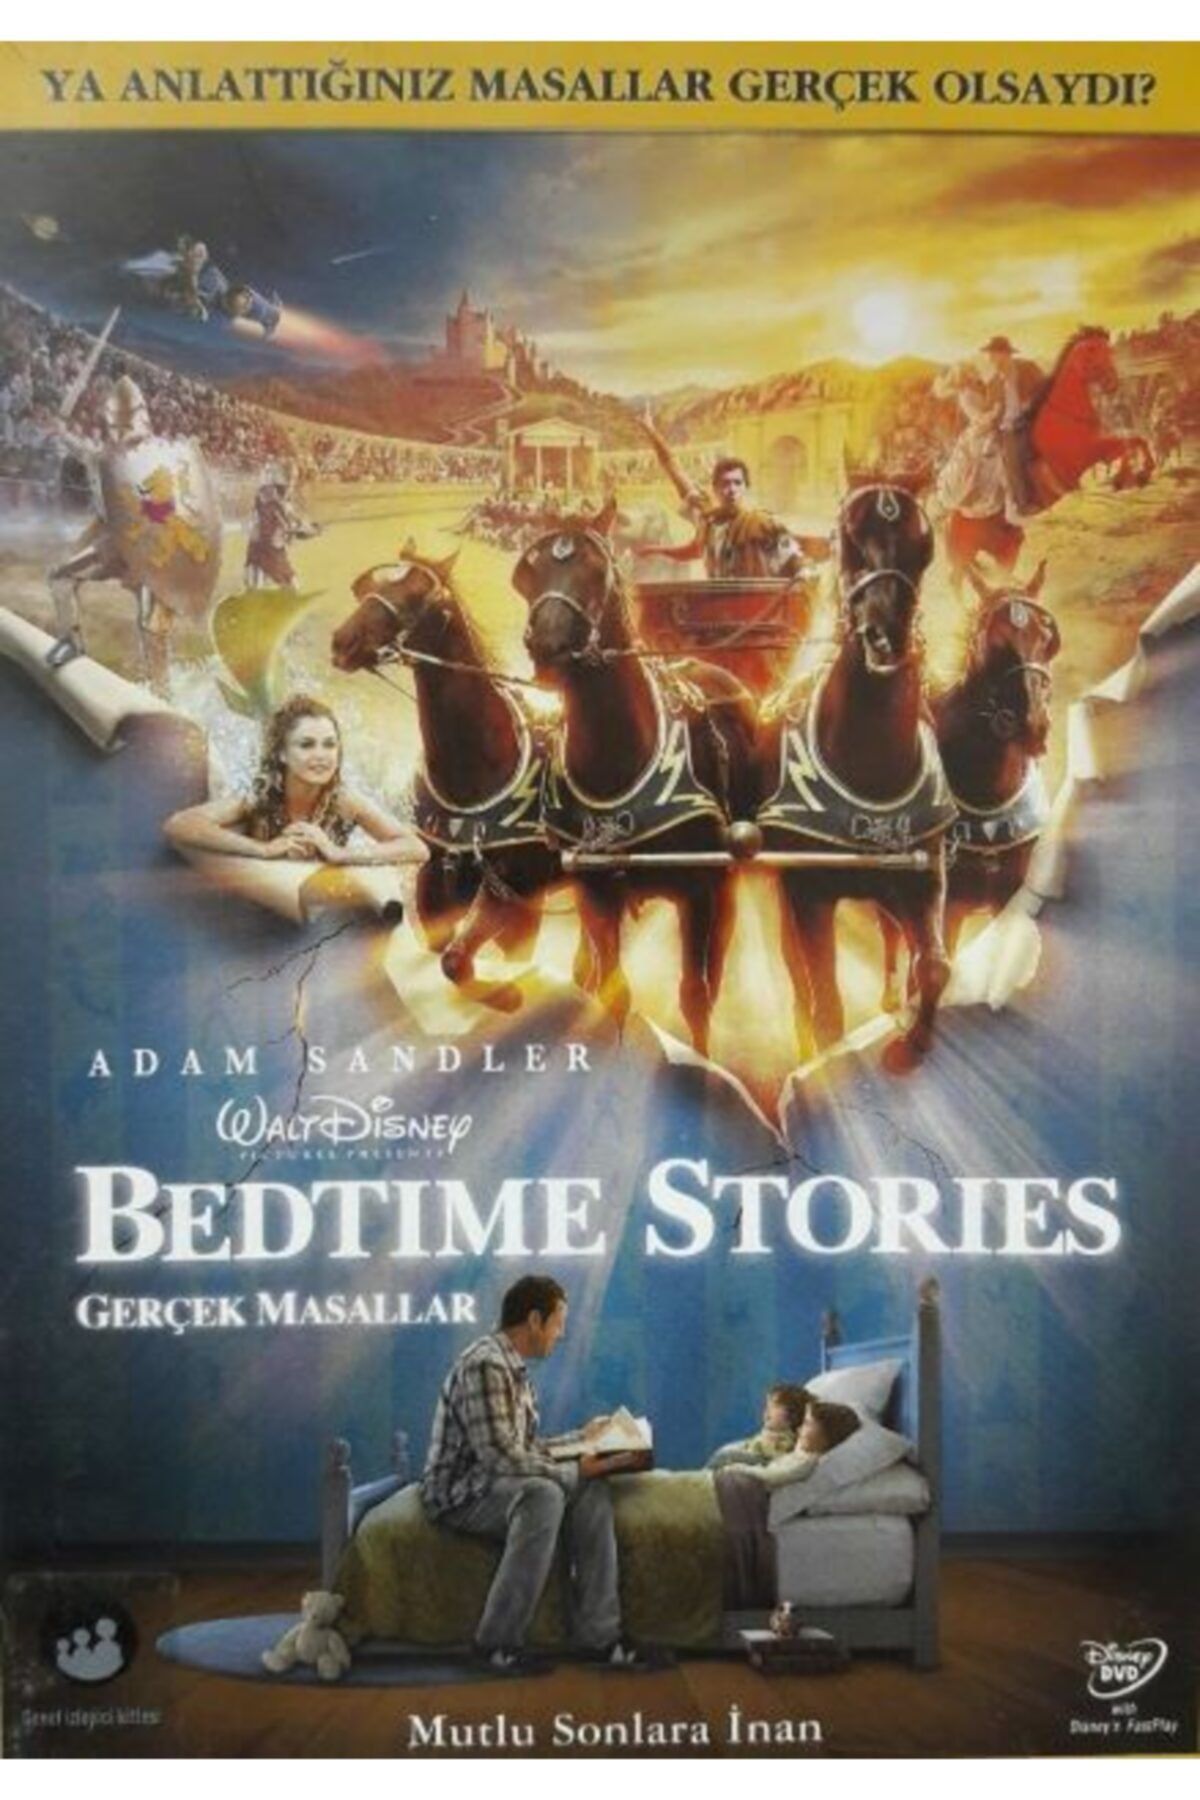 DİSNEY Bedtime Stories (gerçek Masallar) Dvd